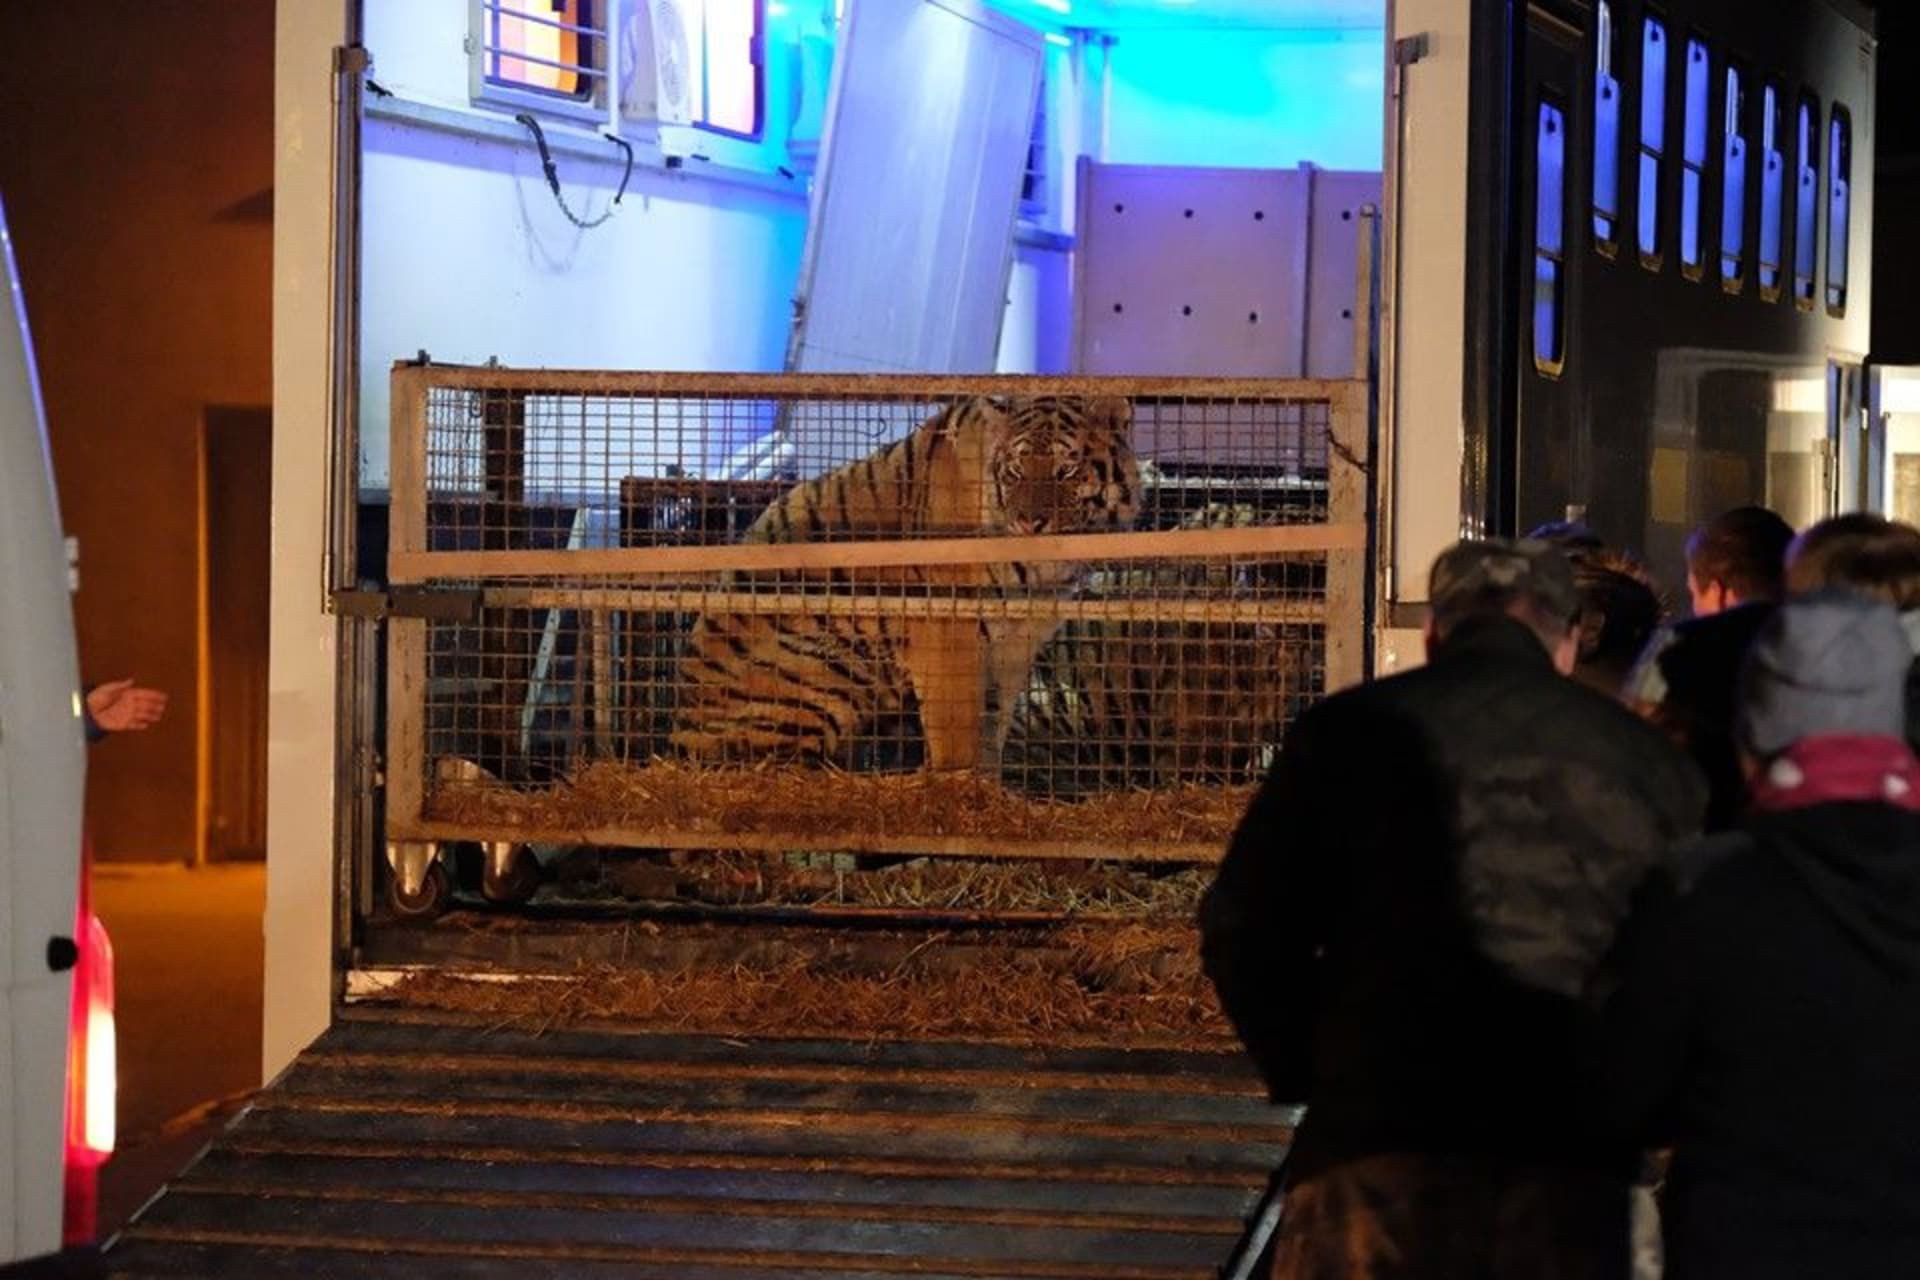 Tygři se již nachází v zoo v rukách odborníků.